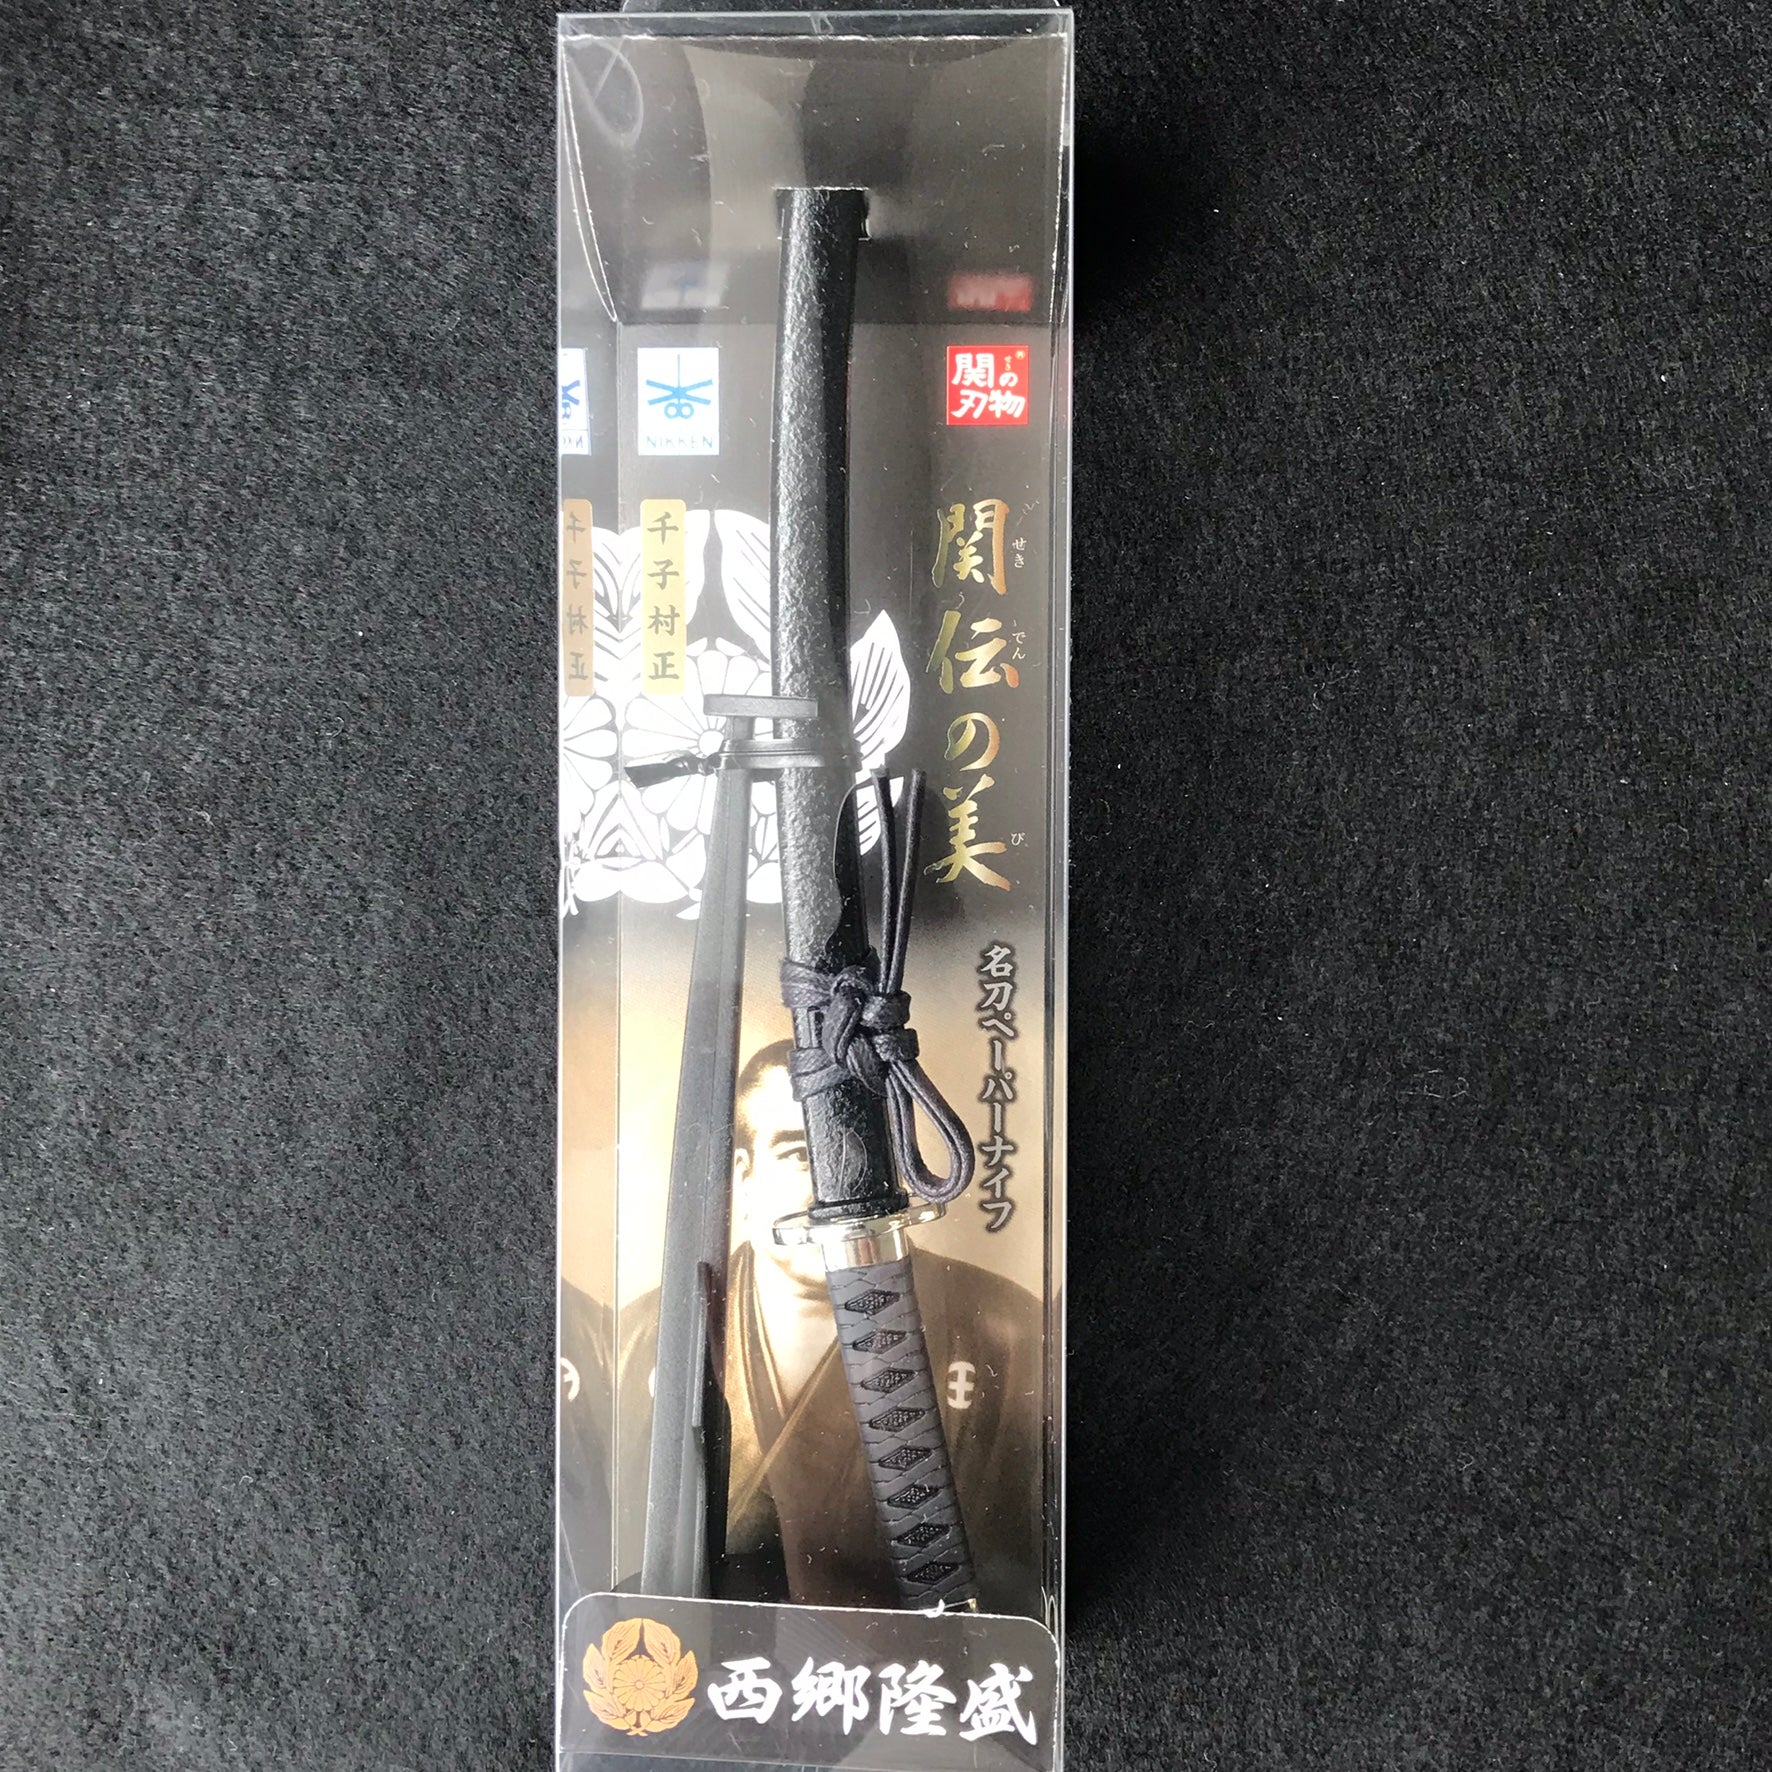 Letter Opener SAMURAI KATANA SWORD Knife Desk Decor item 8 inch Length Safe Edge Saigo Takamori Model MT-32S - JAPANESE GIFTS 